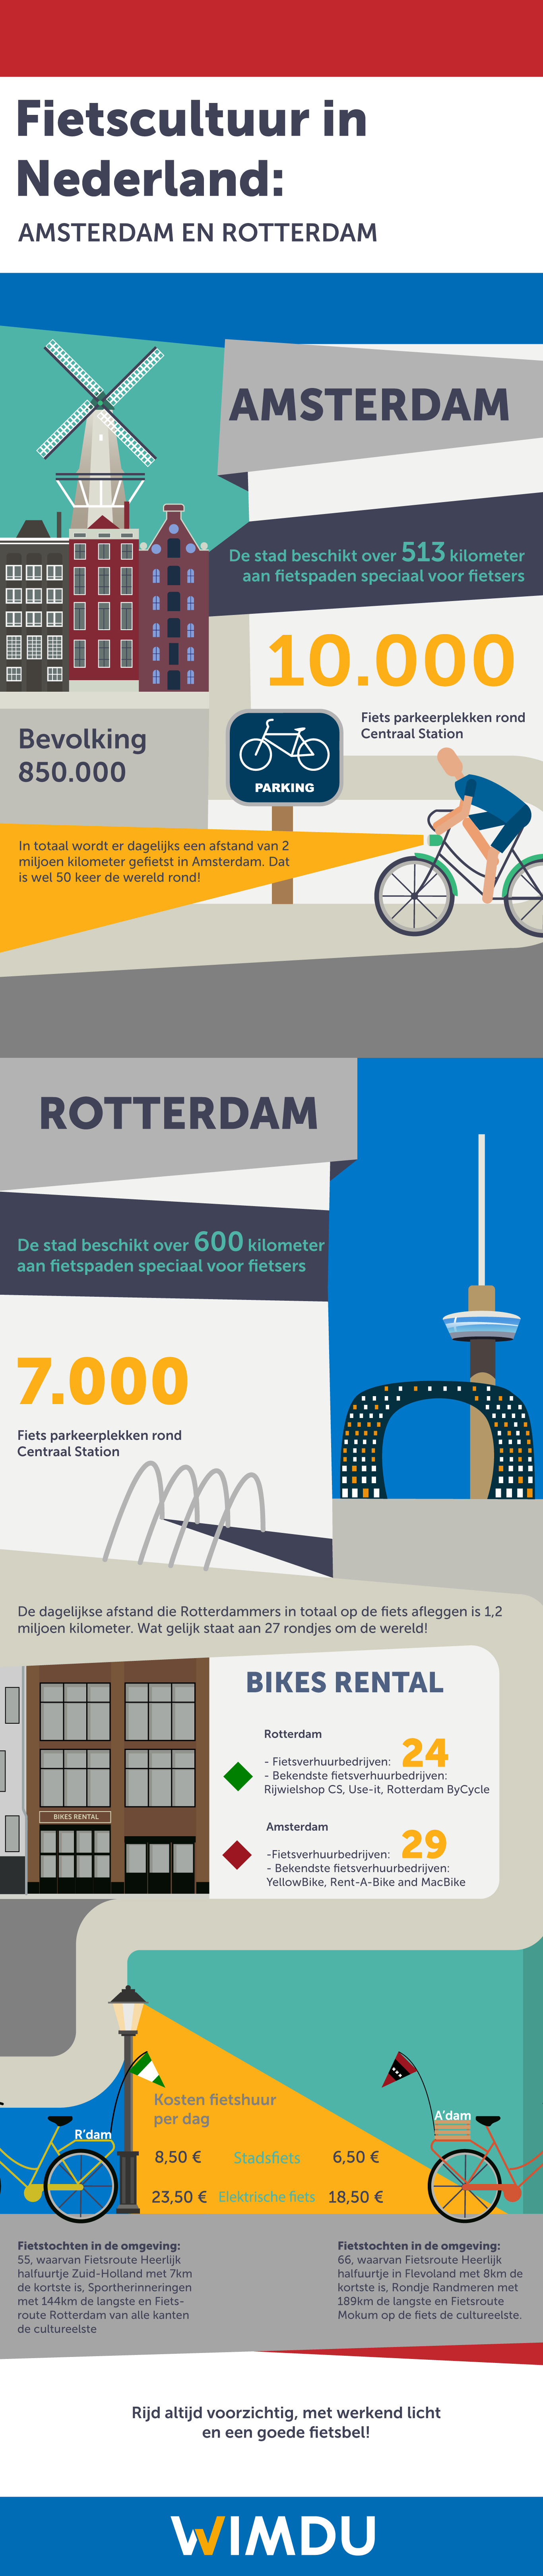 Fietscultuur in Nederland: Amsterdam en Rotterdam